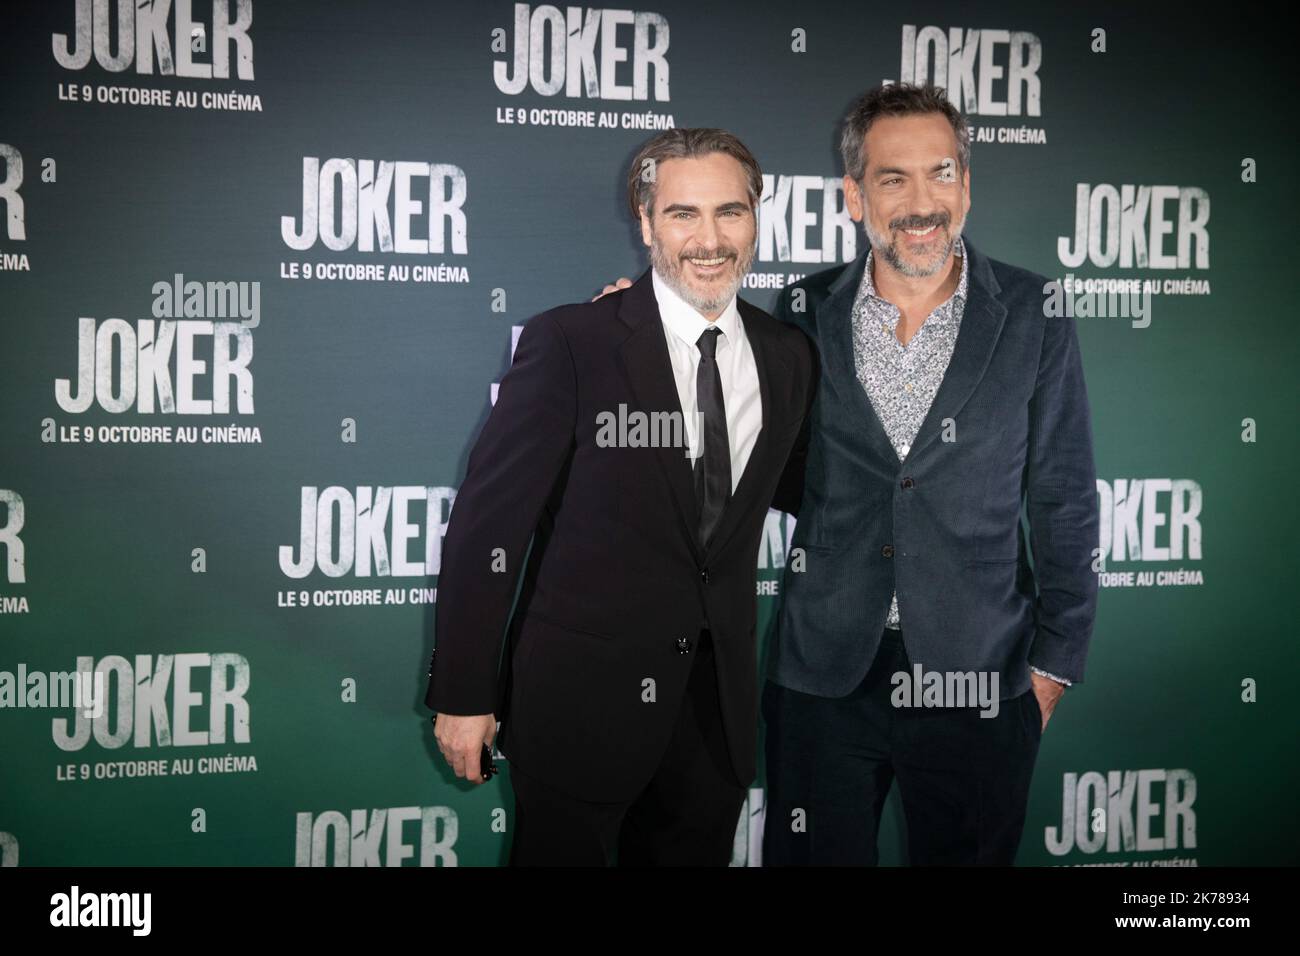 le rÃ©alisateur du film Todd Phillips And Joaquin Phoenix Photo LP / Fred Dugit -   Joker premiere in Paris, France, on sept 23rd 2019 Stock Photo